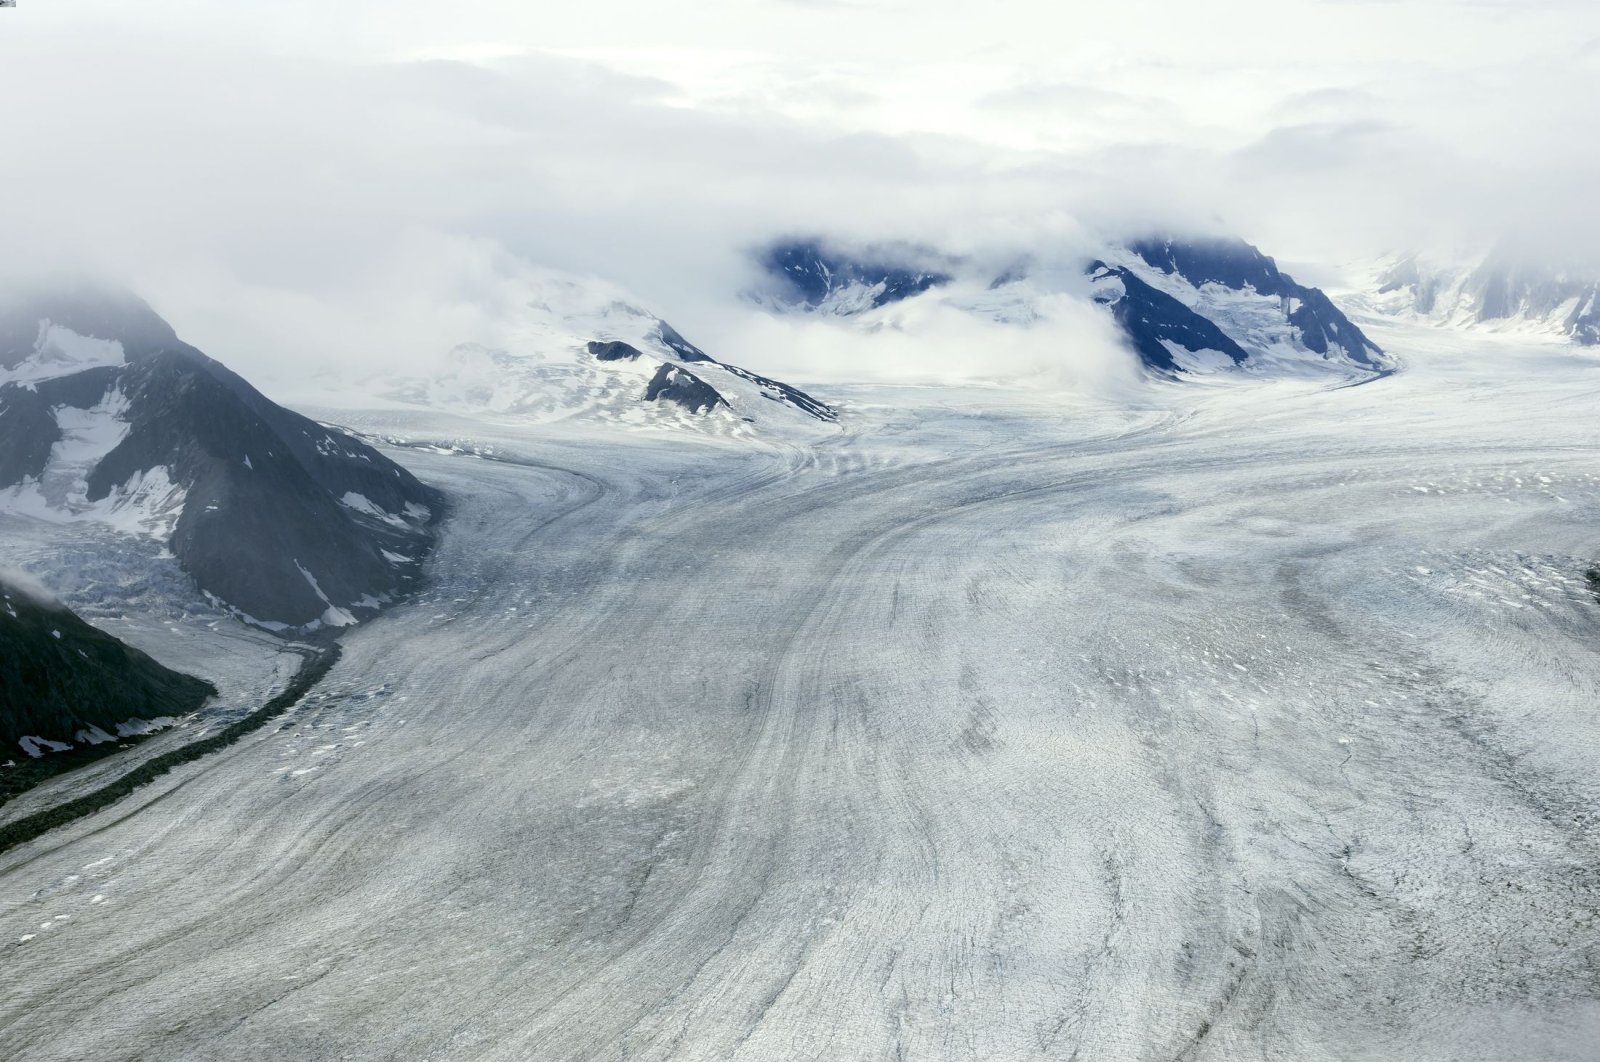 Atlet menemukan kamera penjelajah terkenal di gletser 85 tahun kemudian